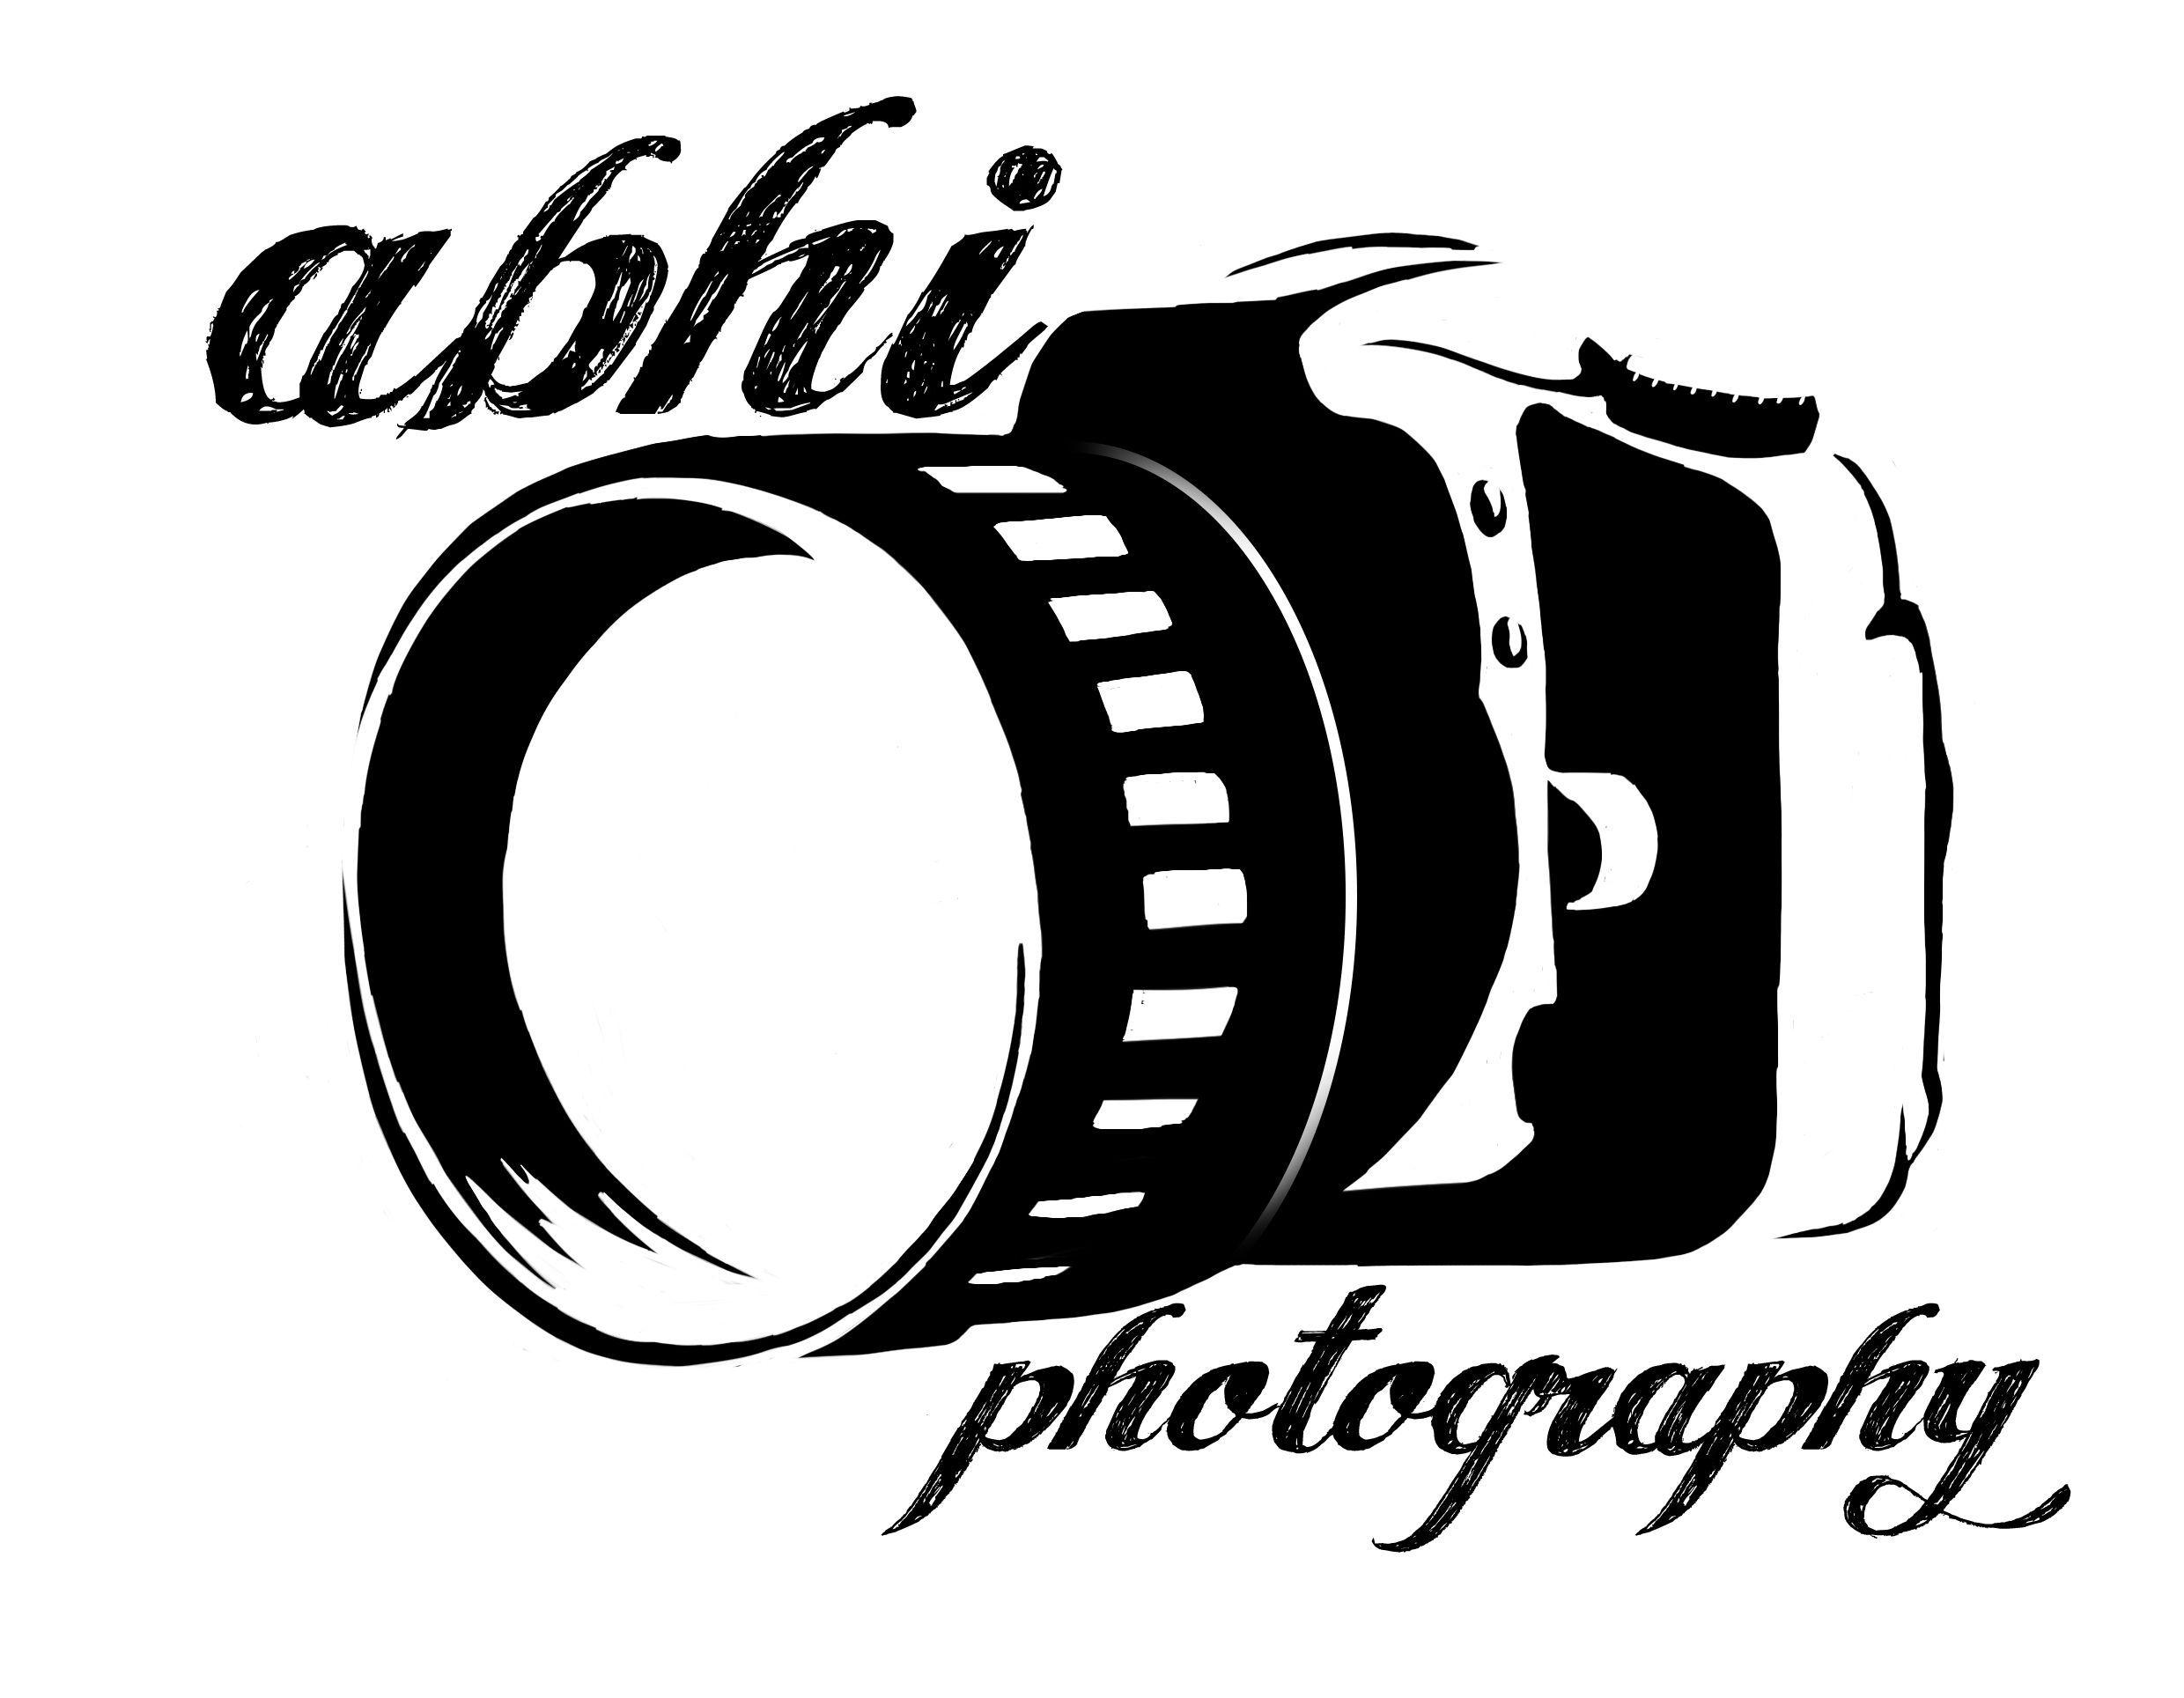 Photography Logo. logos. Photography logos